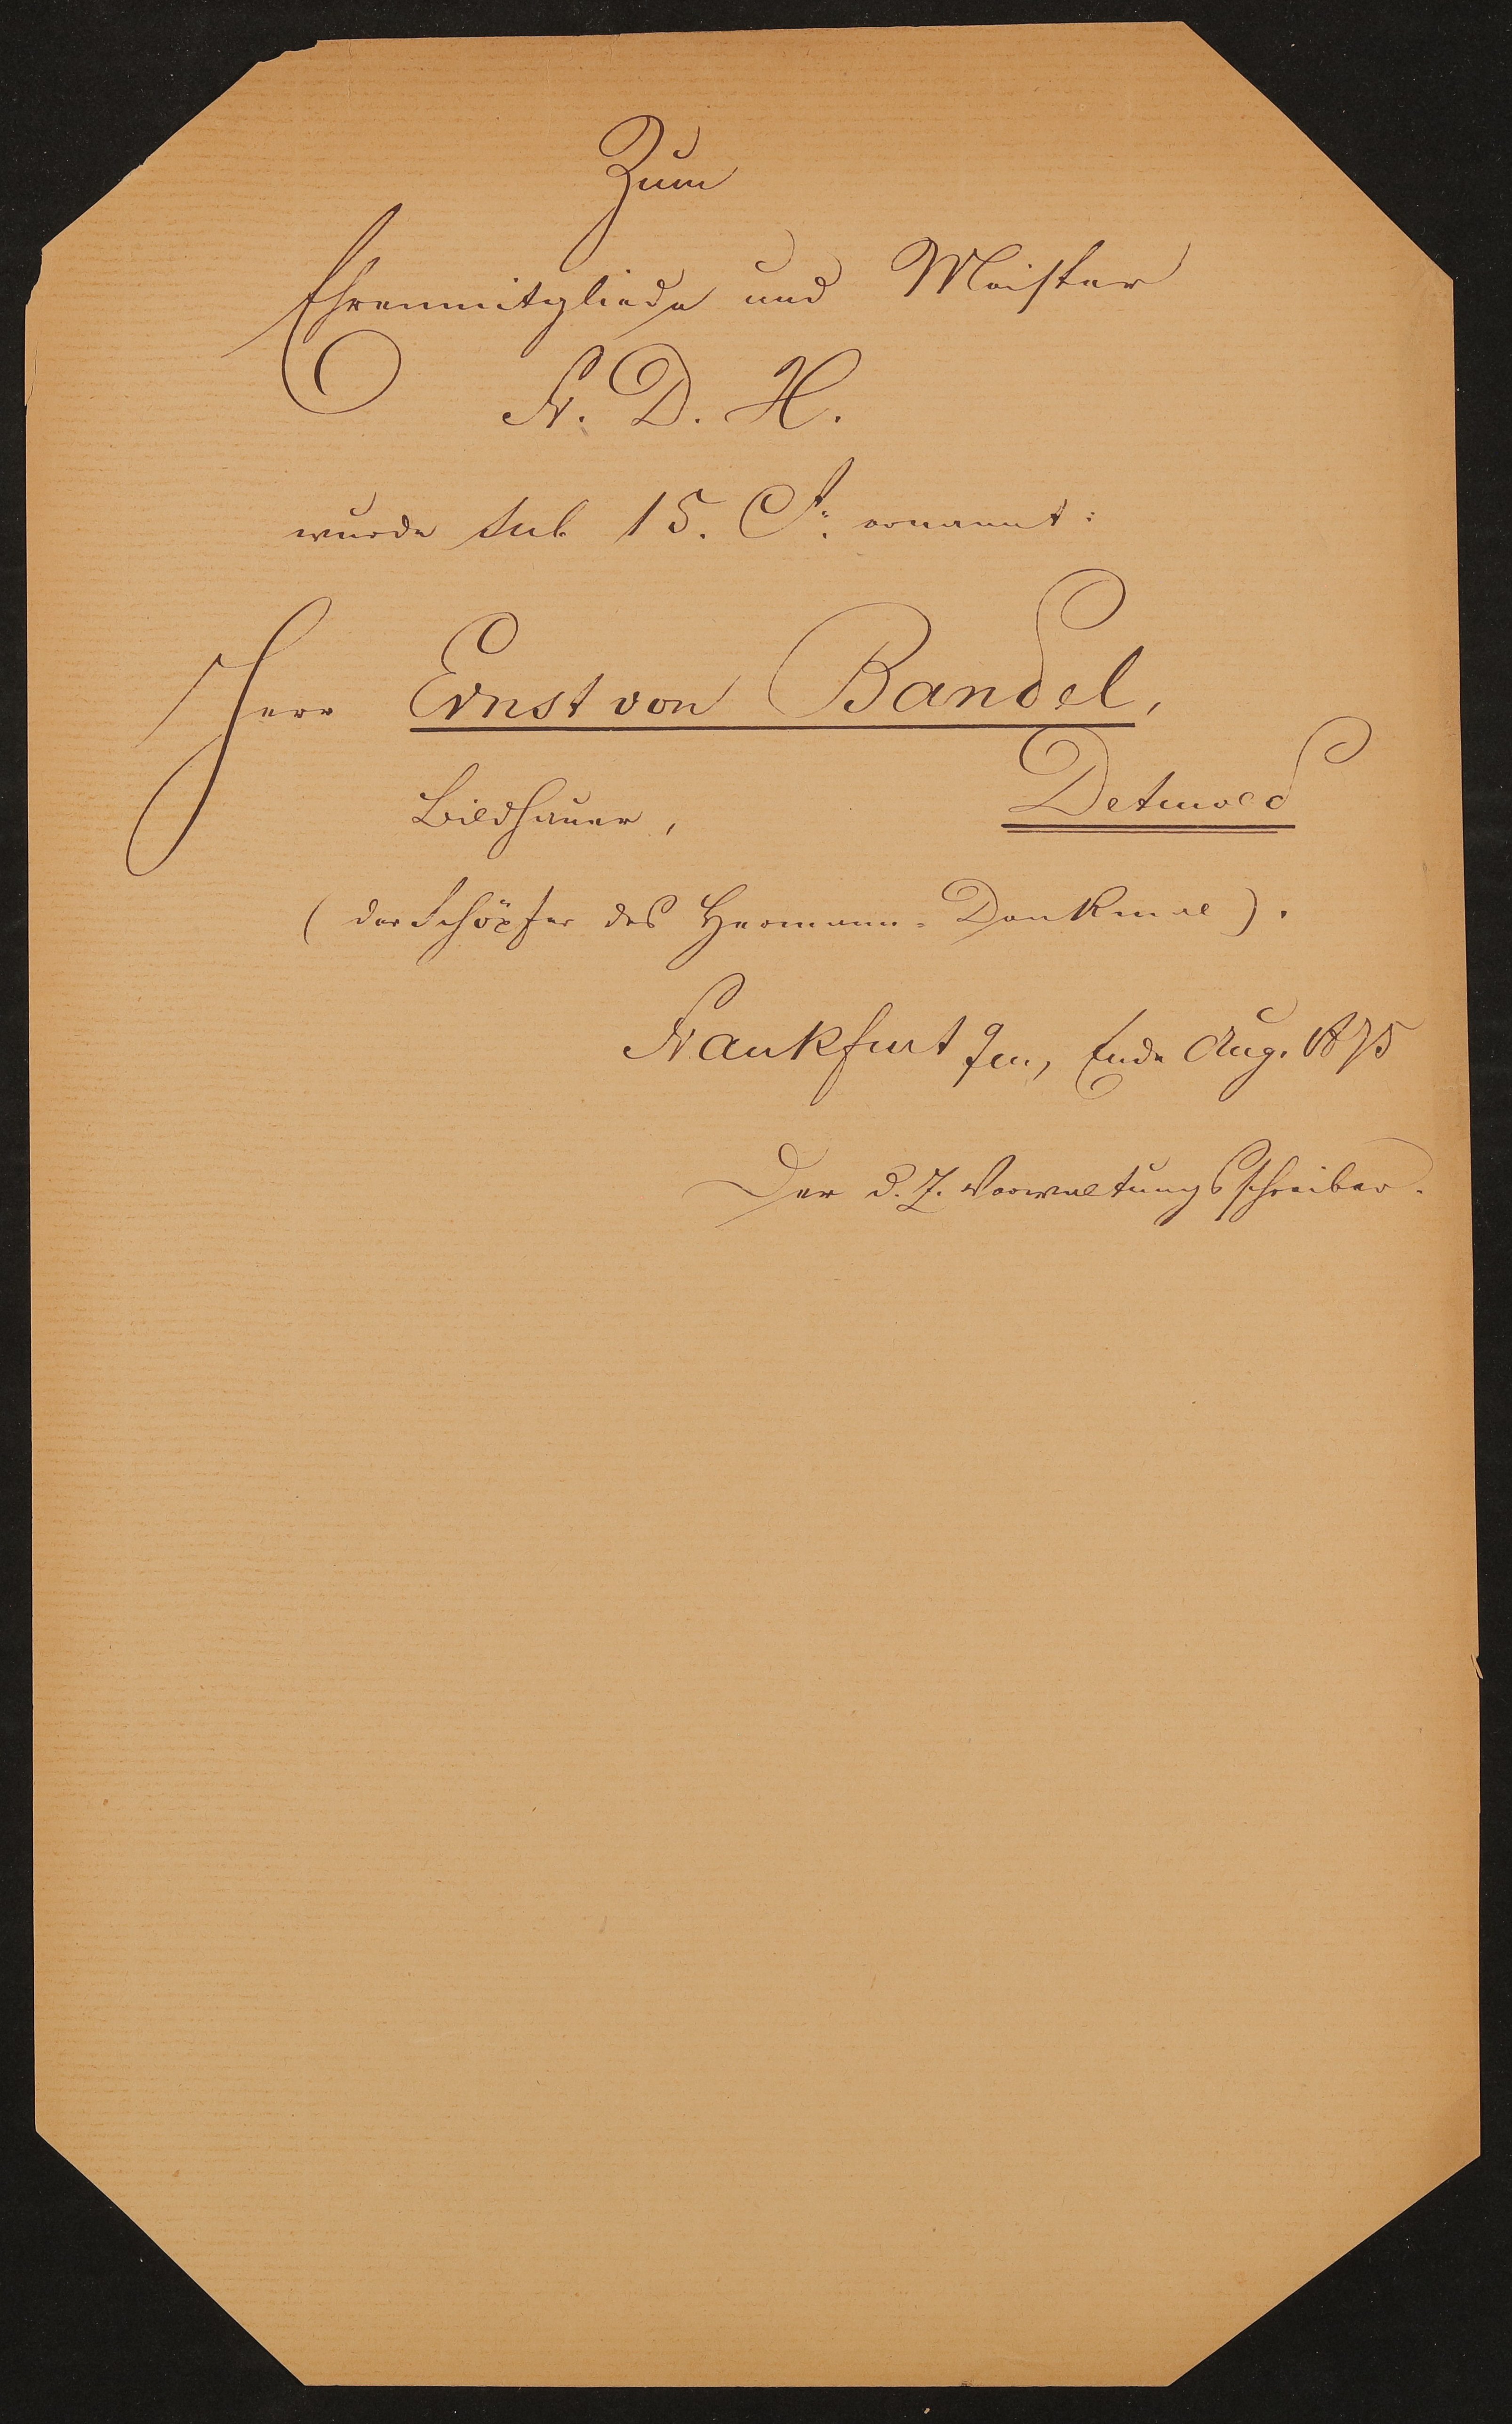 Liste "Zum Ehrenmitgliede und Meister des Fr.D.H. wurde Jul. 15. [1875] ernannt" (Freies Deutsches Hochstift / Frankfurter Goethe-Museum Public Domain Mark)